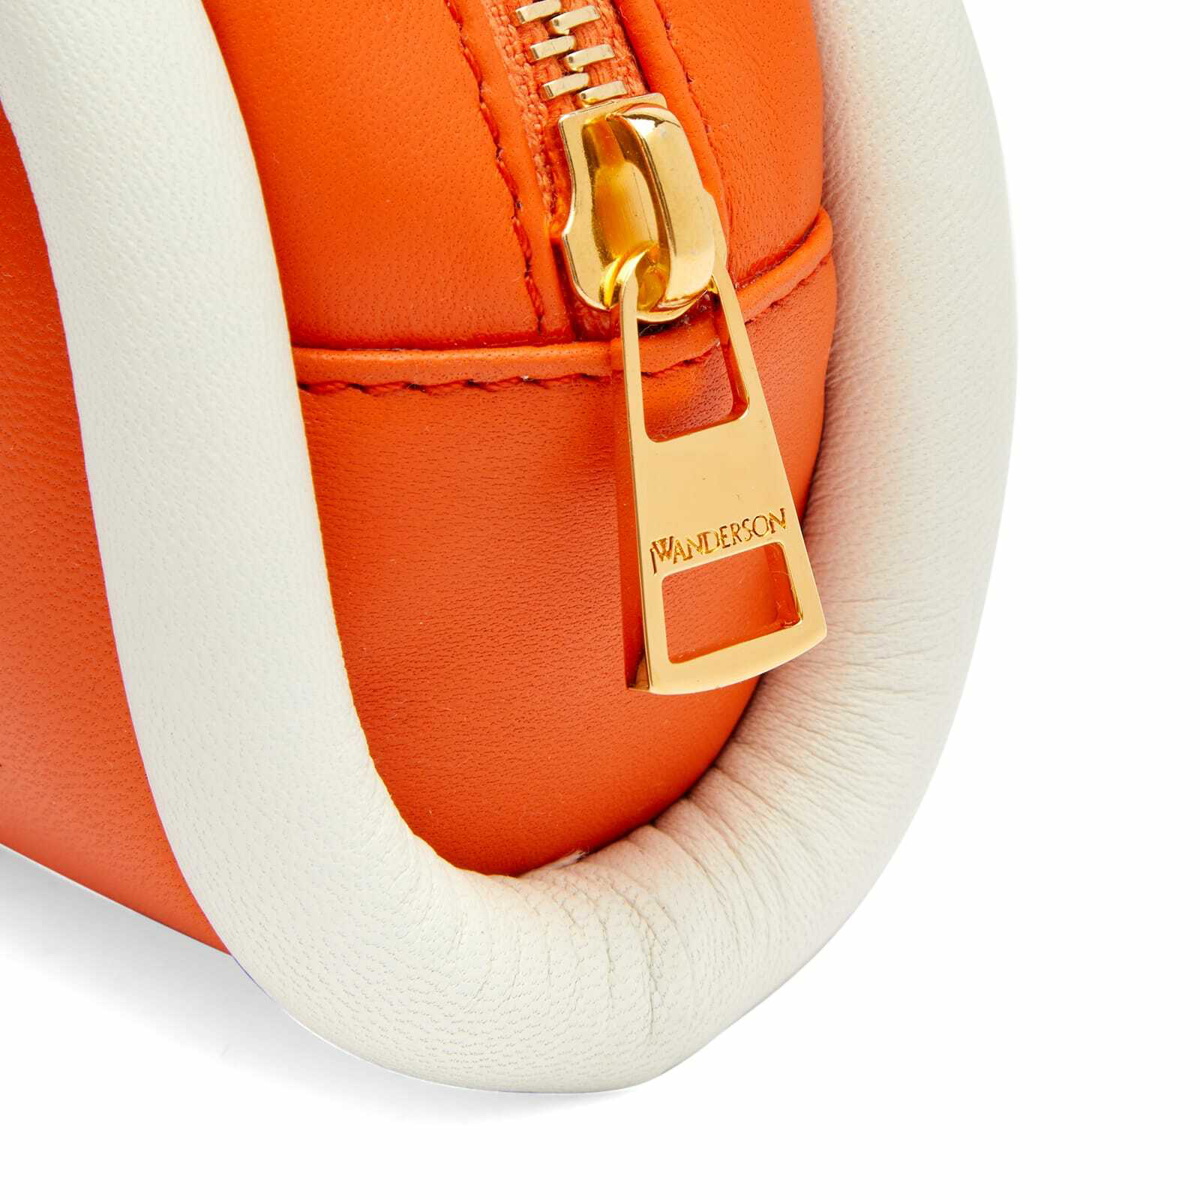 TOMMY HILFIGER Orange purse handbag, Leather and Canvas, TH Logo, small 9x7  | eBay